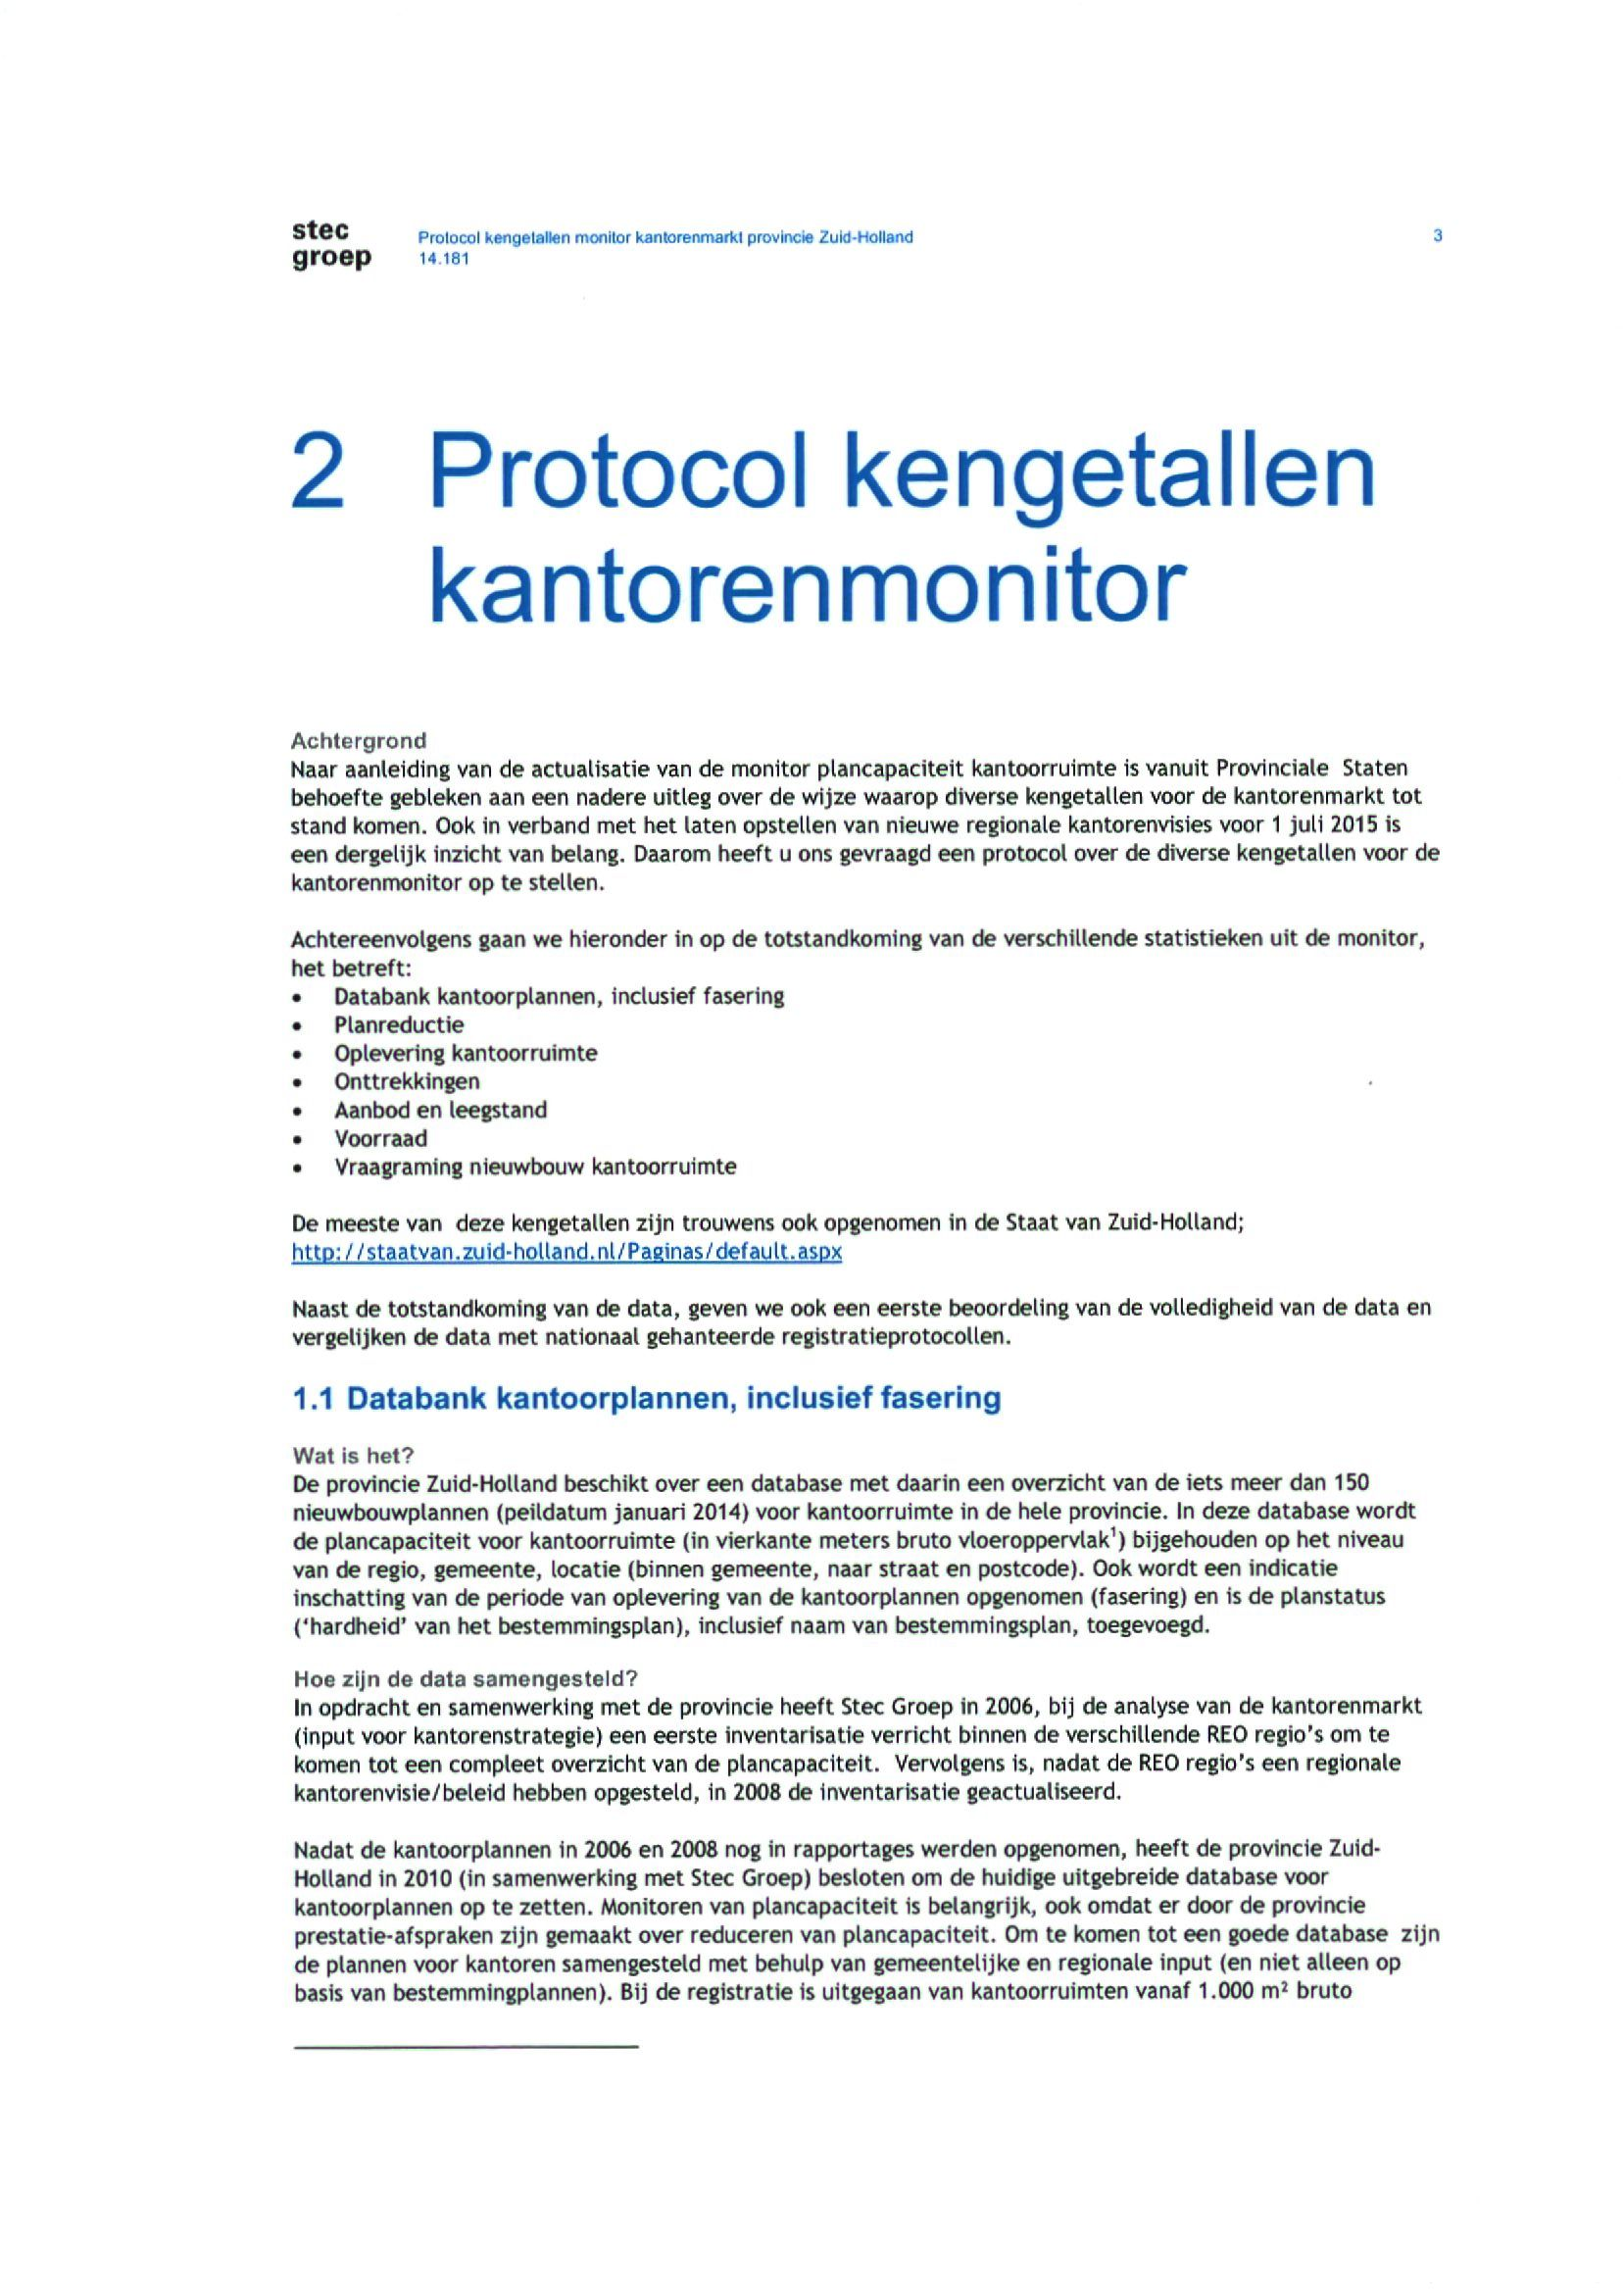 stee Protocol Kwigalallen monitor kamorenmarkt provkkie Zukl-Holland groep 14181 2 Protocol kengetallen kantorenmonitor Achtergrond Naar aanleiding van de actualisatie van de monitor plancapaciteit